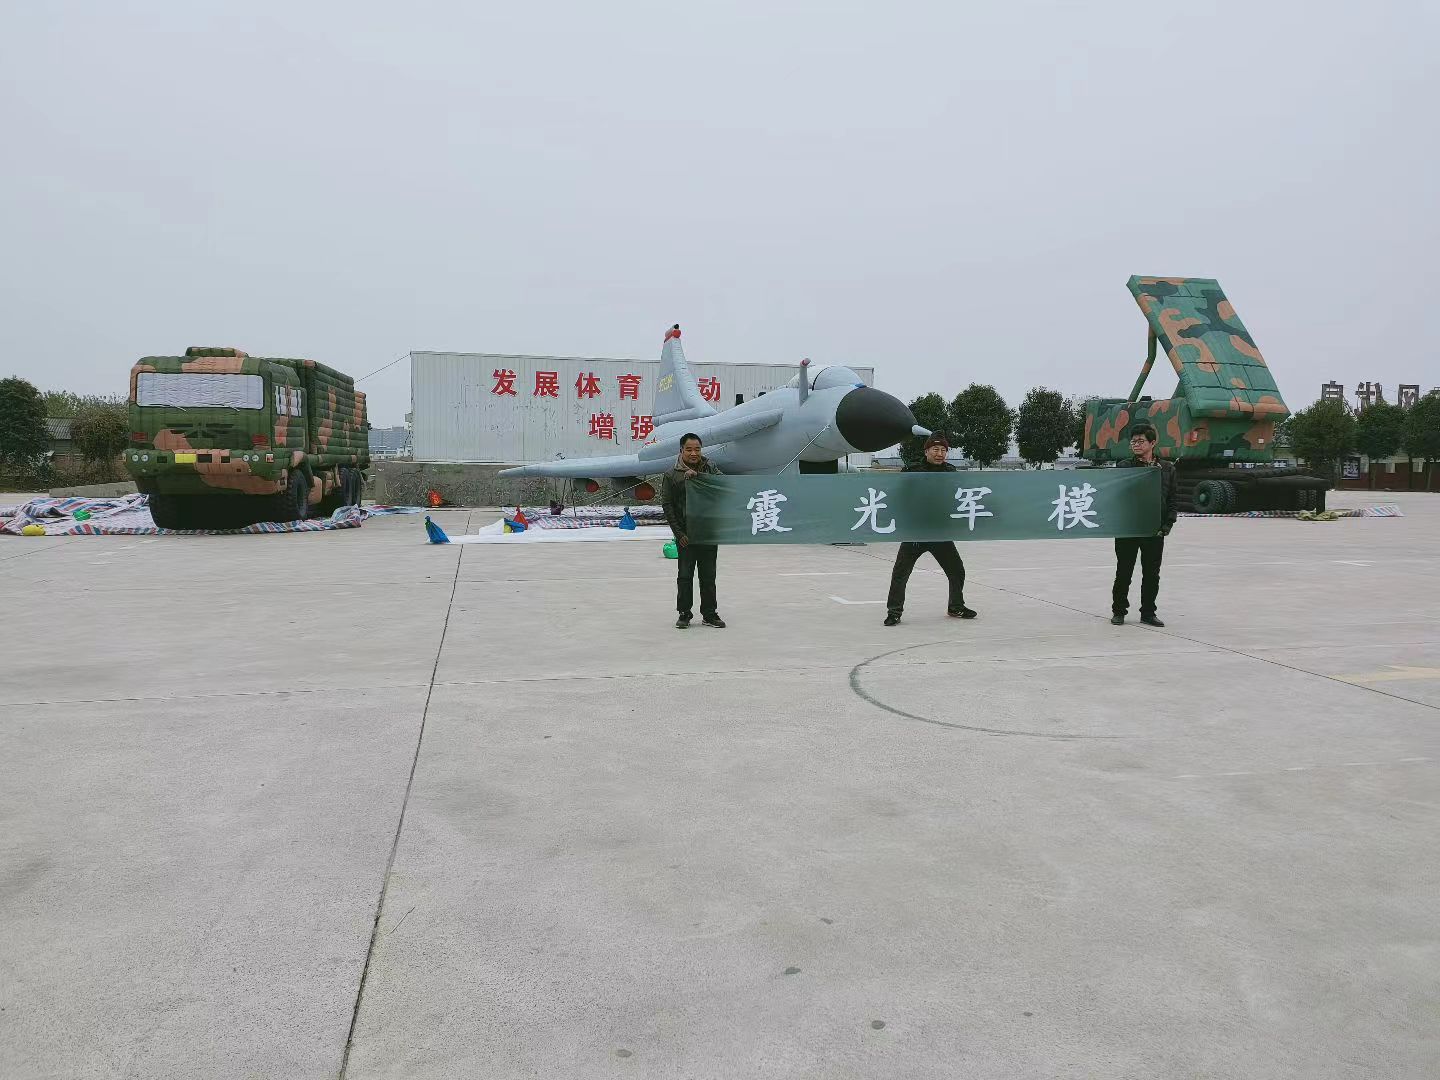 绥阳专家称引发关注的无人飞艇或为探空气球:主要用于气象观测